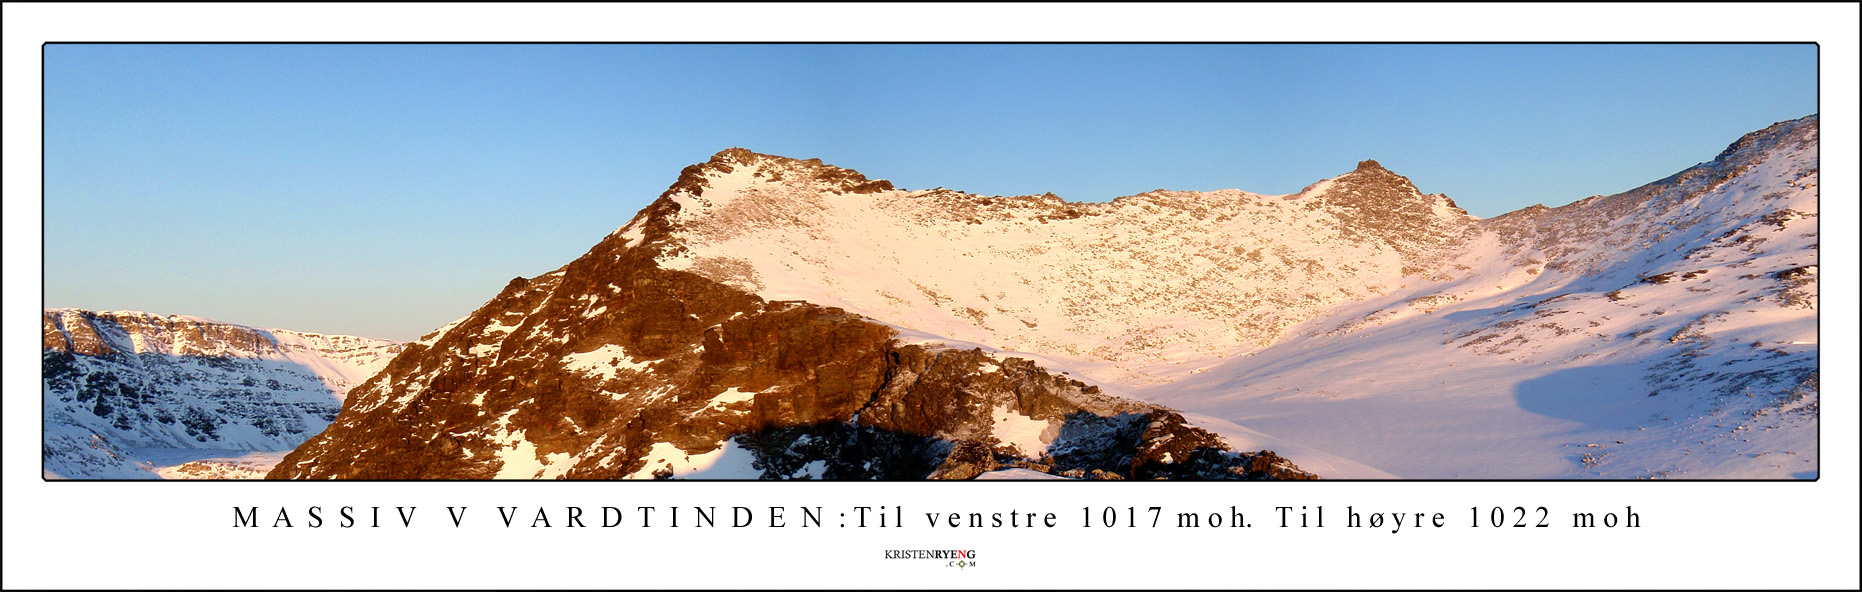 Panorama-MassivVVardtinden2.jpg - Oversikt over fjellmassivet vest for Vardtinden ved Breivikeidet. Toppene måler 1017 og 1022 moh, men har ingen navn.